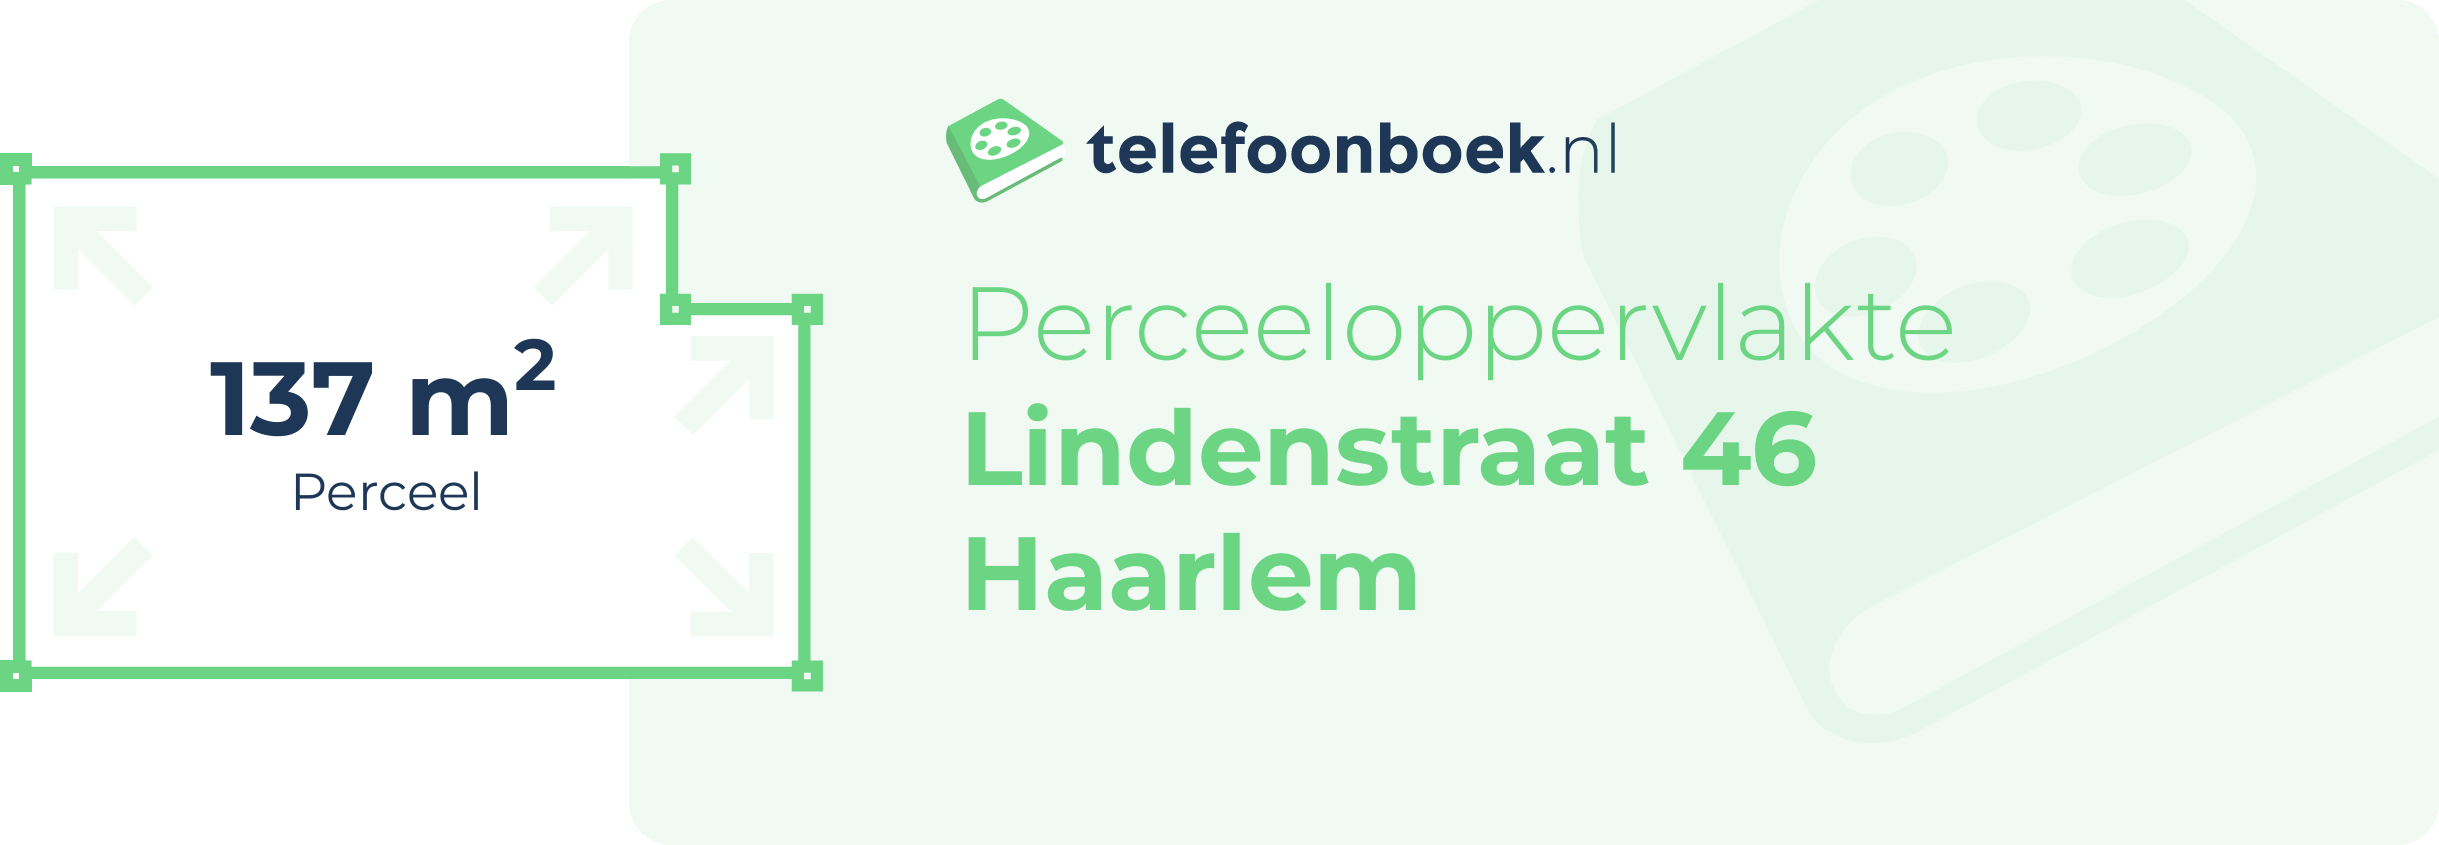 Perceeloppervlakte Lindenstraat 46 Haarlem